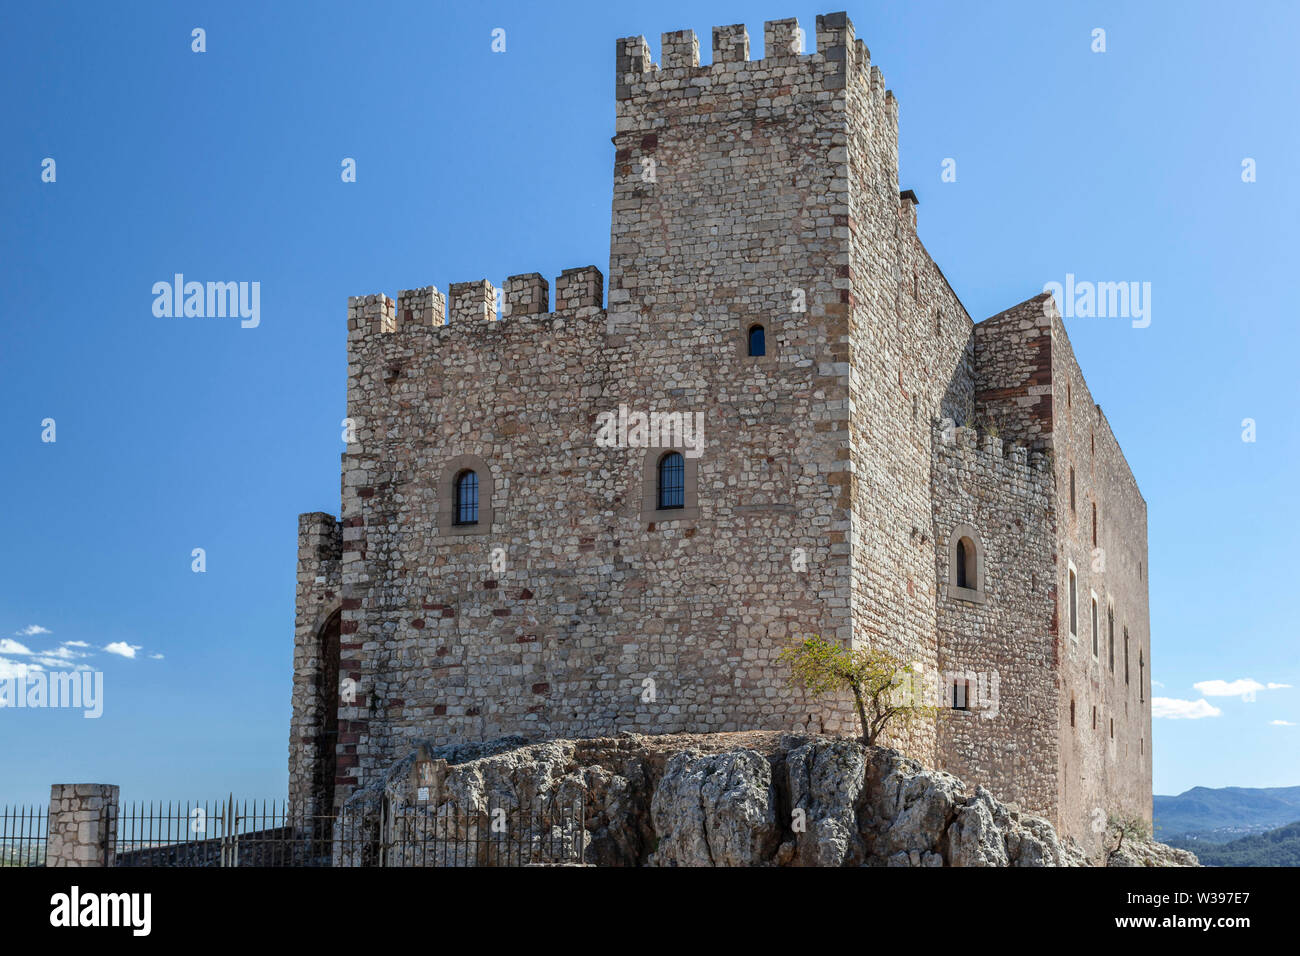 Mittelalterliches Schloss von Dorf El Papiol, Katalonien, Spanien. Stockfoto